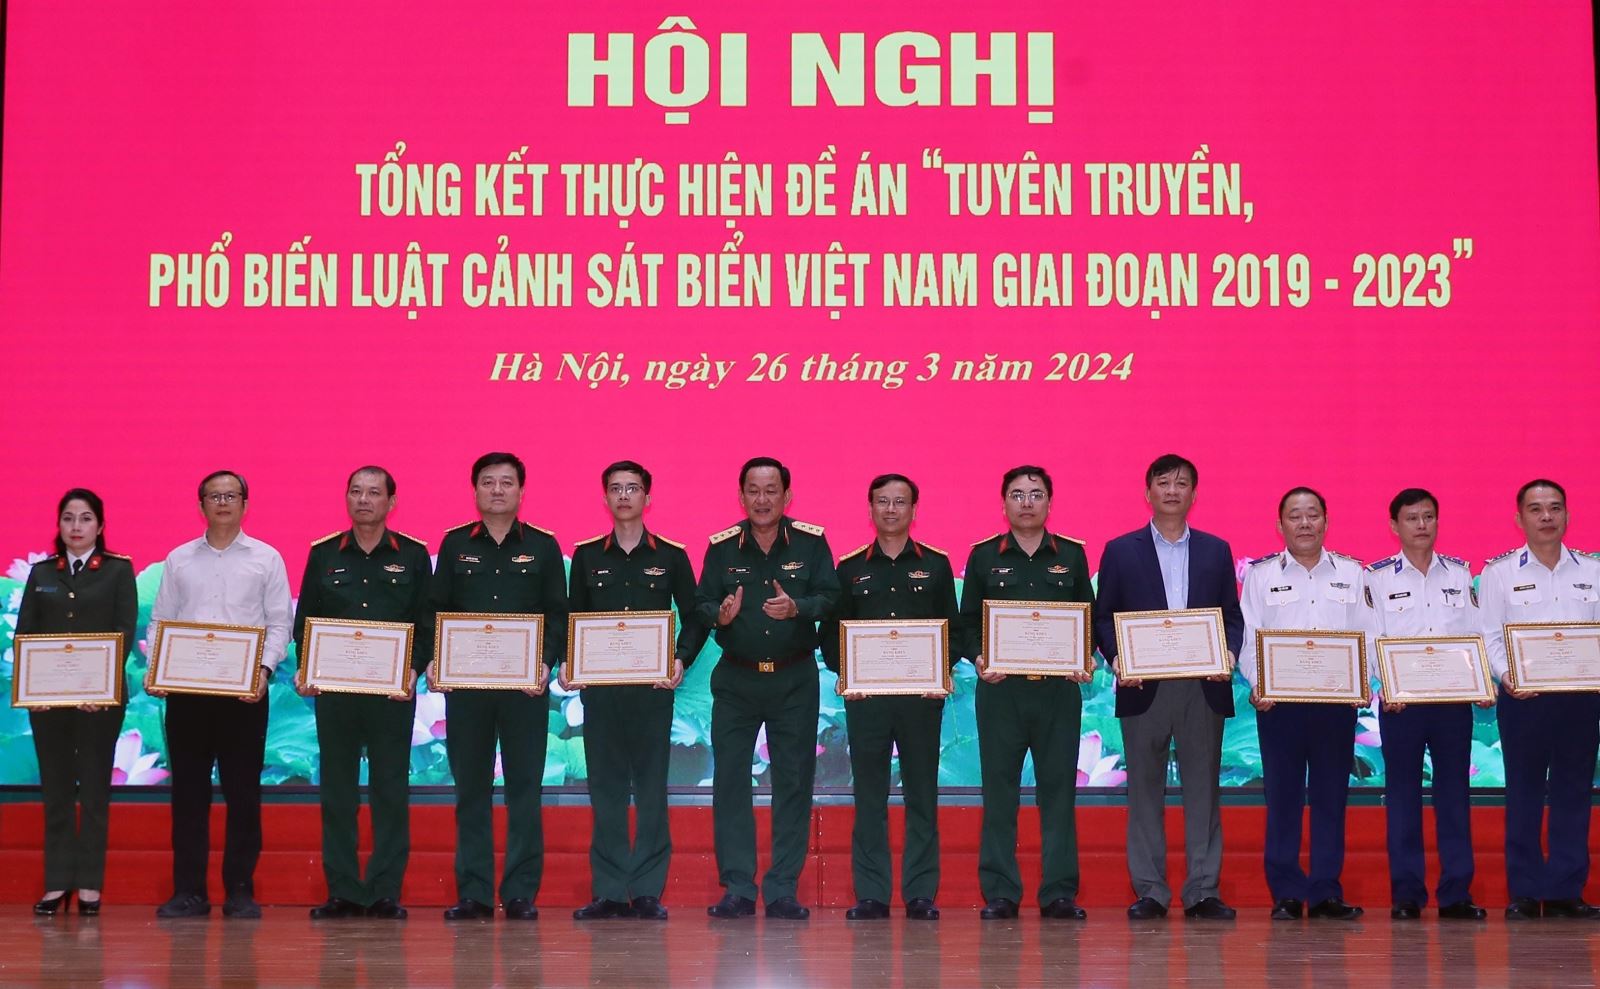  Thực hiện tốt công tác tuyên truyền, phổ biến Luật Cảnh sát biển Việt Nam 